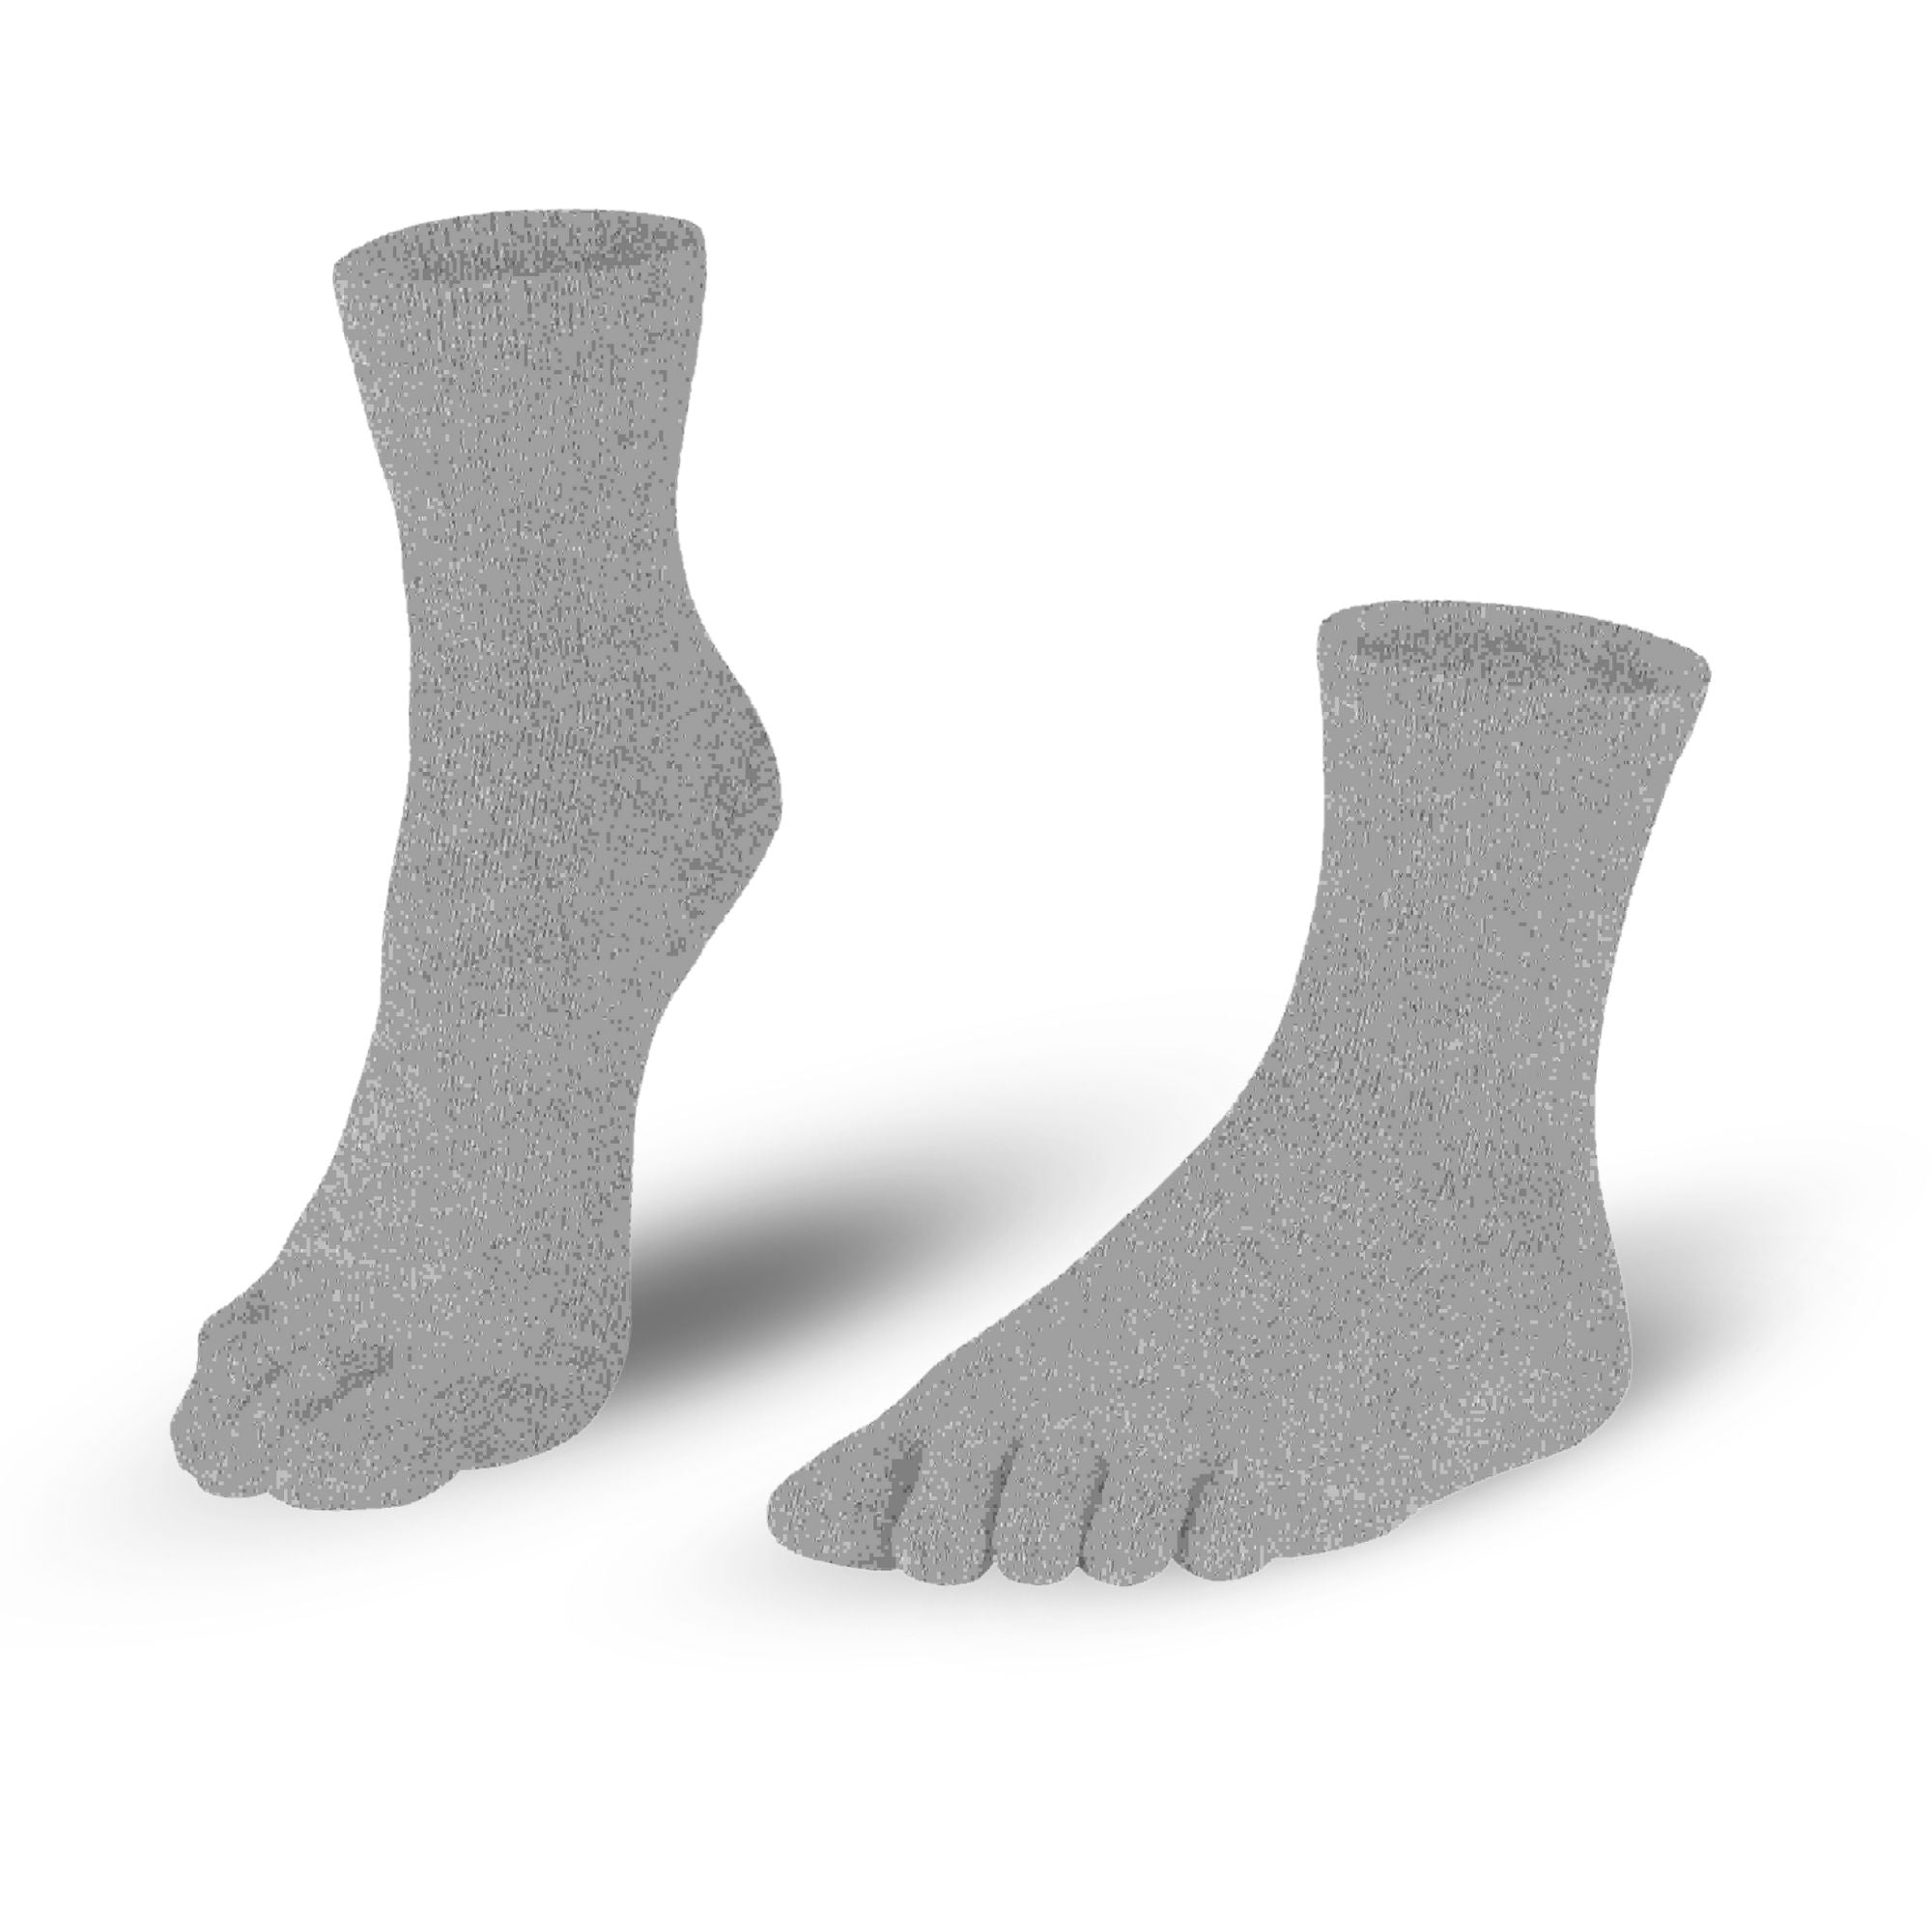 Knitido Low Cut Sneaker Toe Socks